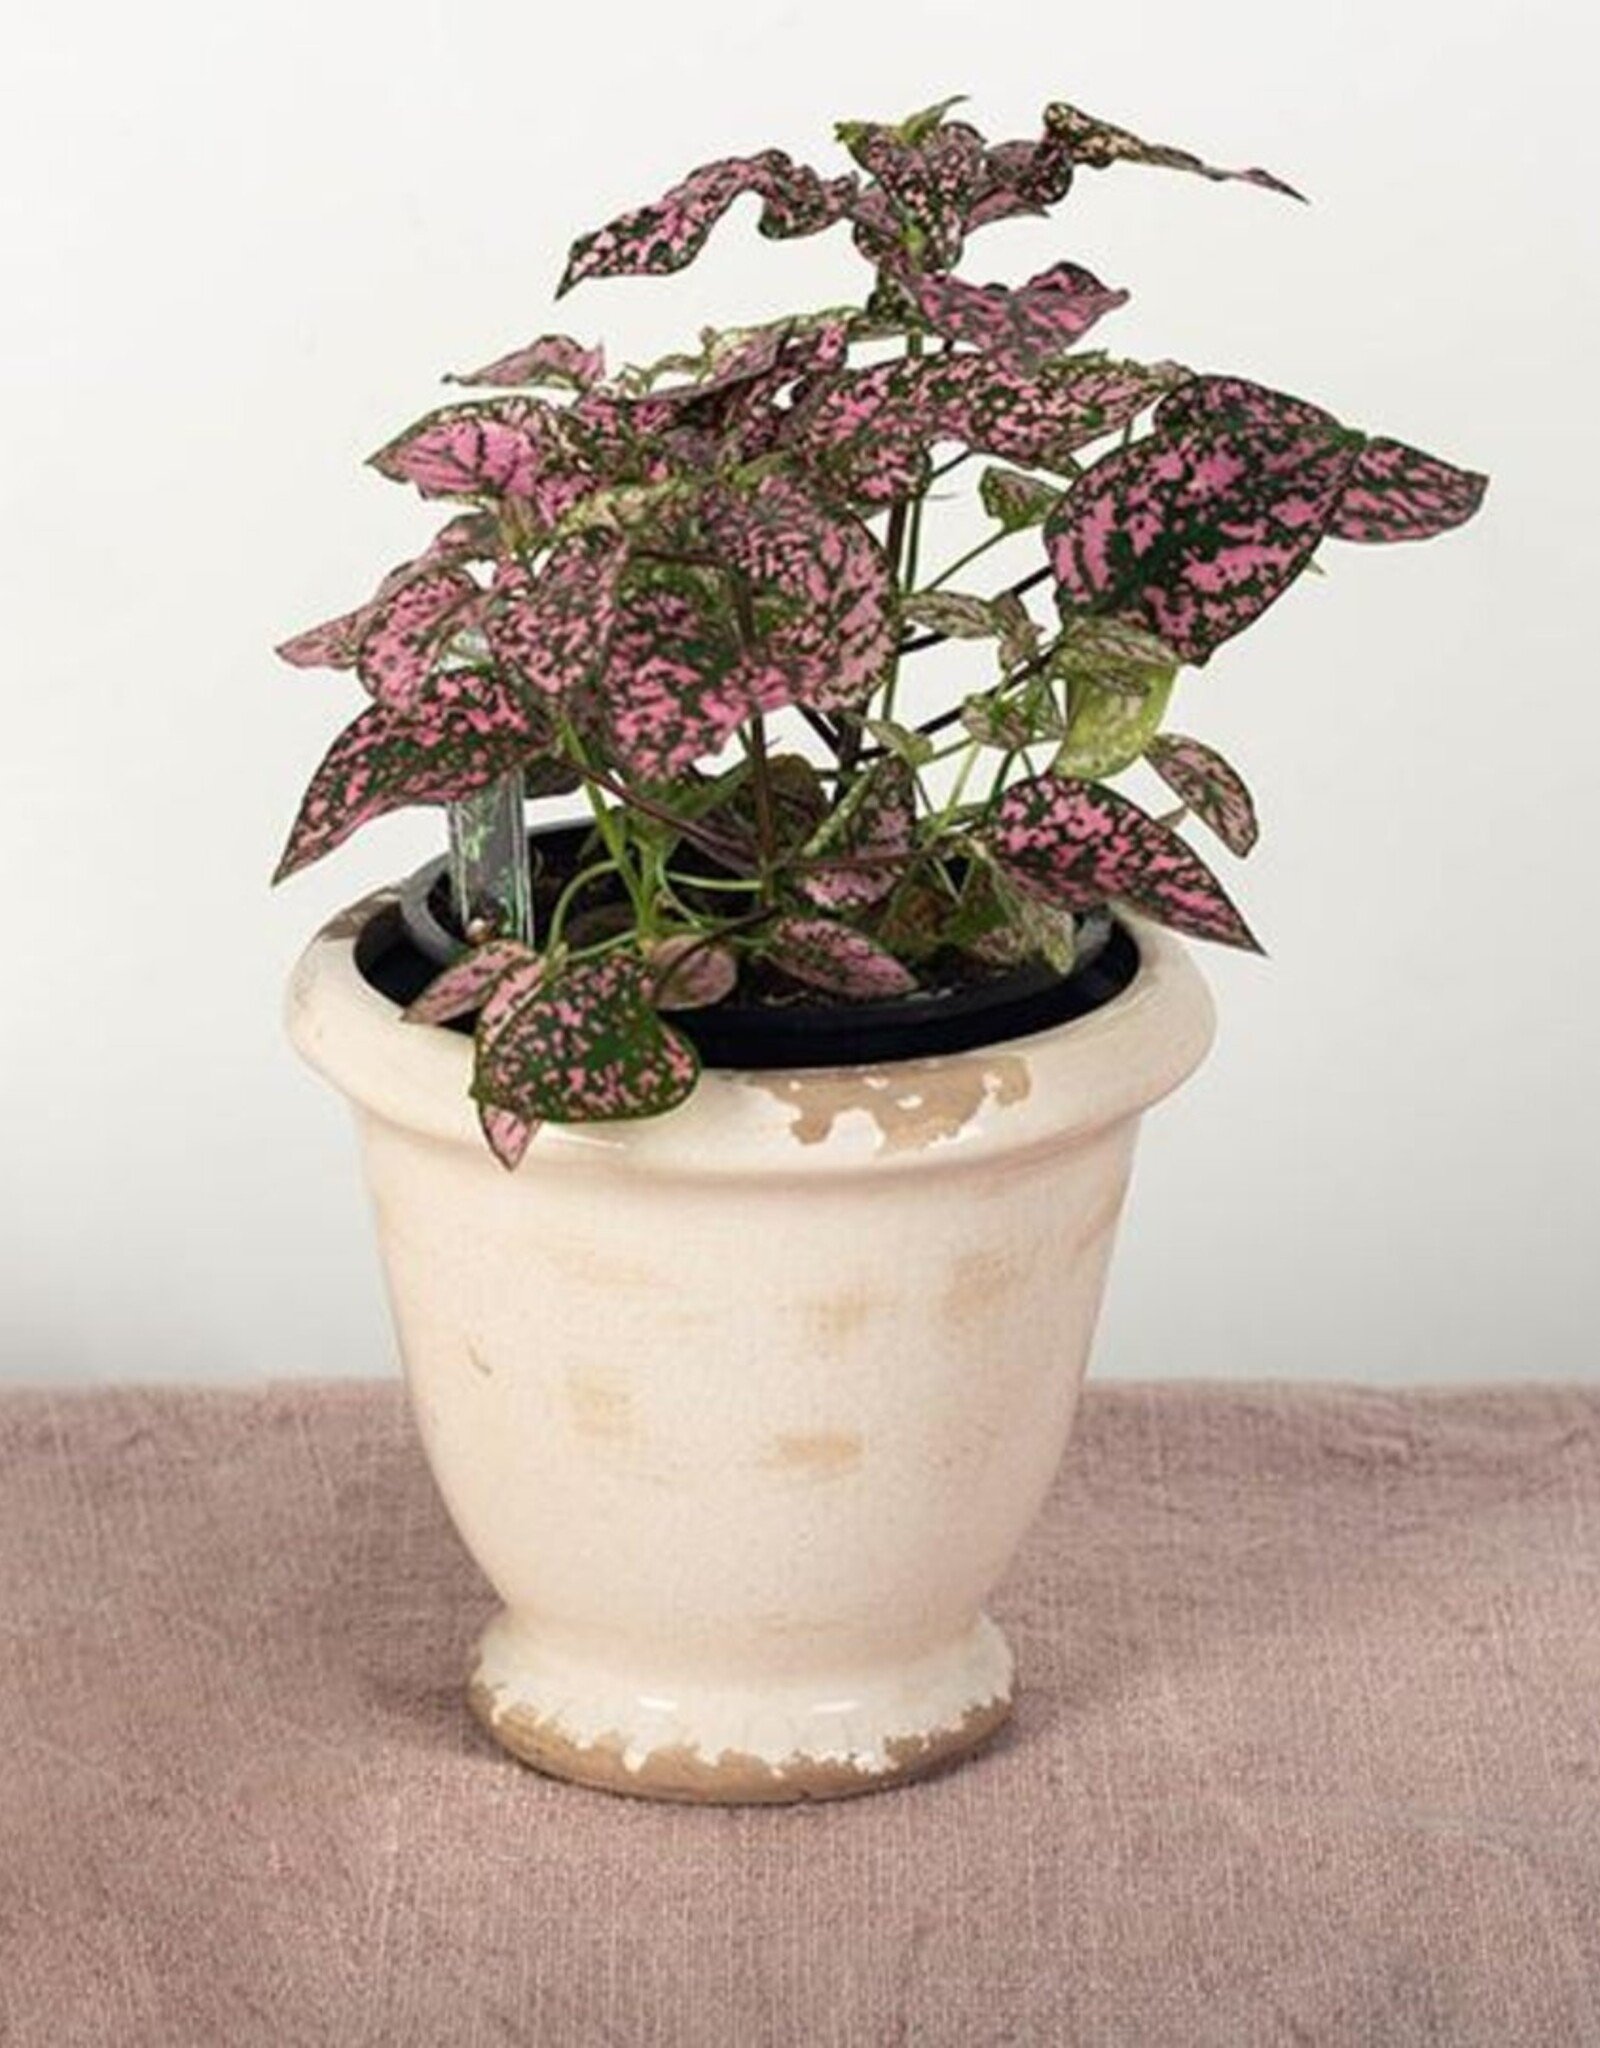 Forpost Trade Glazed Ceramic Flower Pot